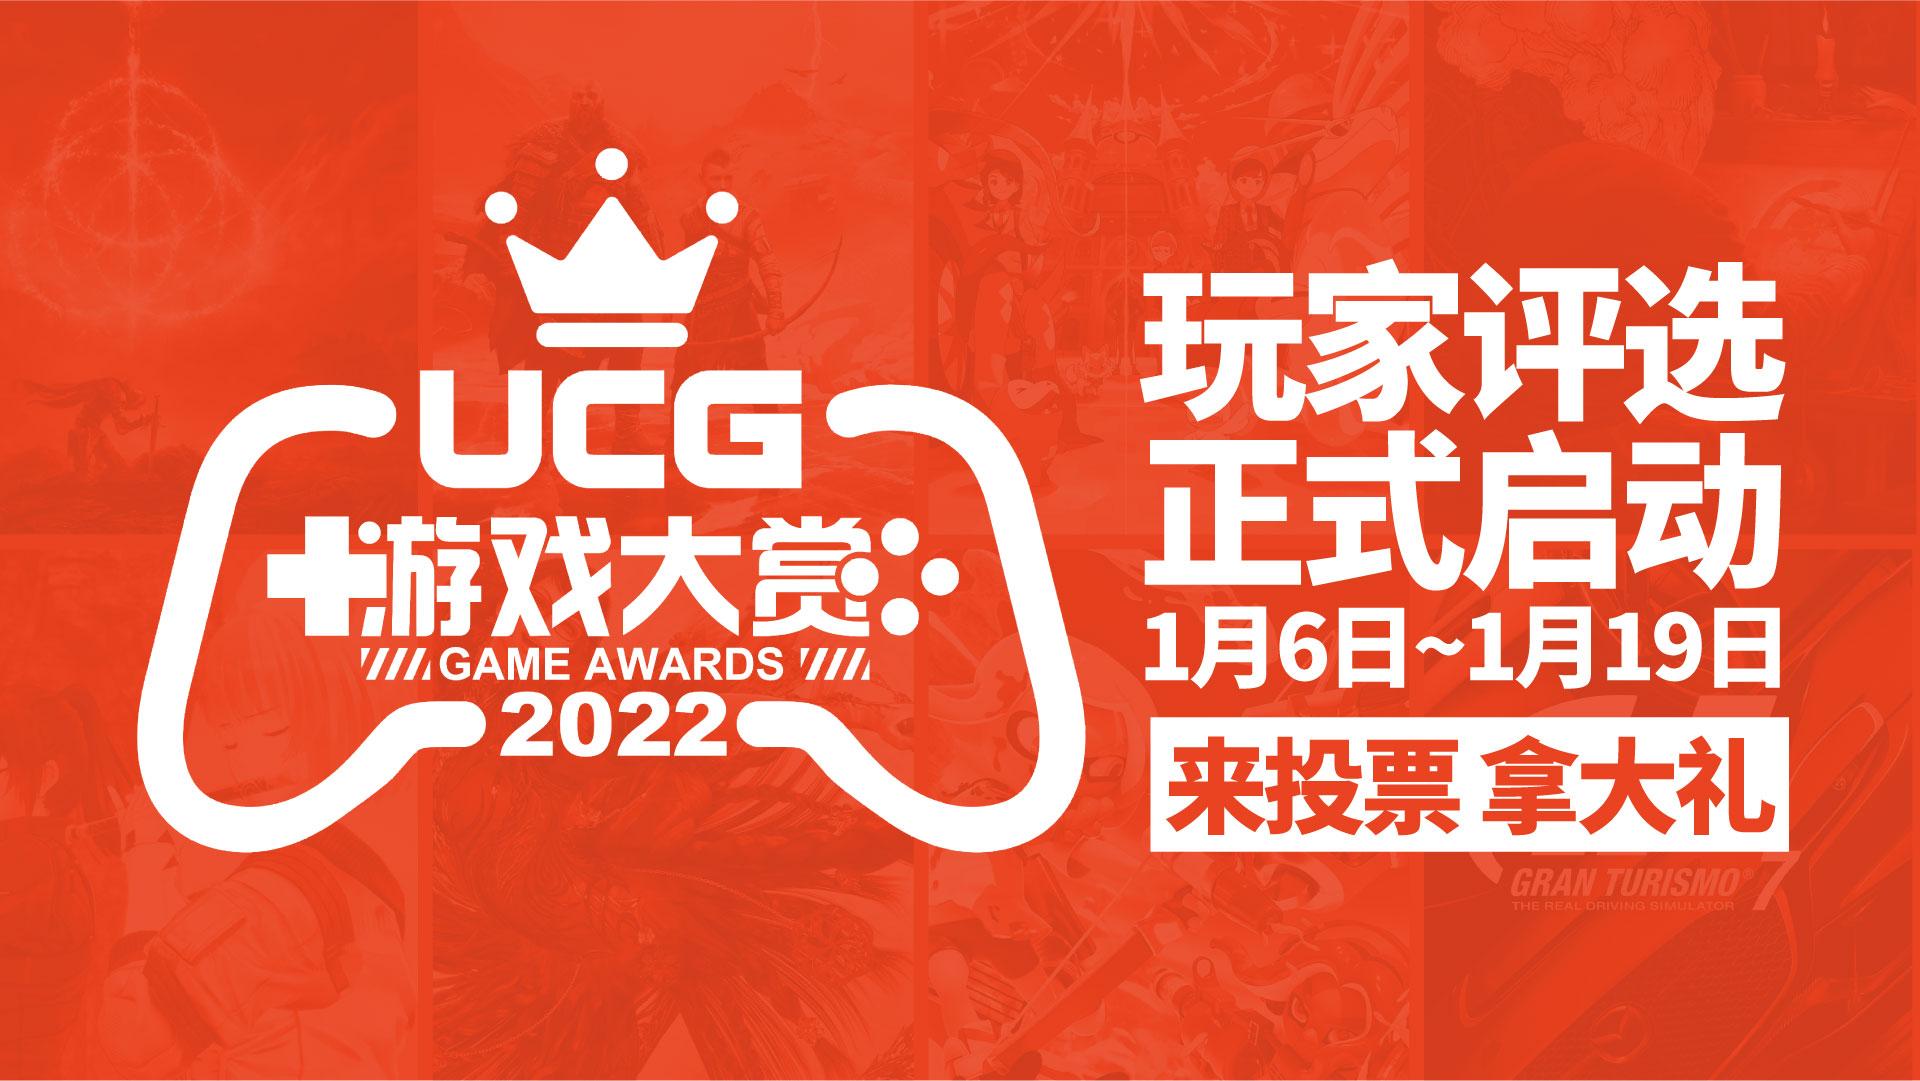 UCG遊戲大賞2022玩家評選現已啟動